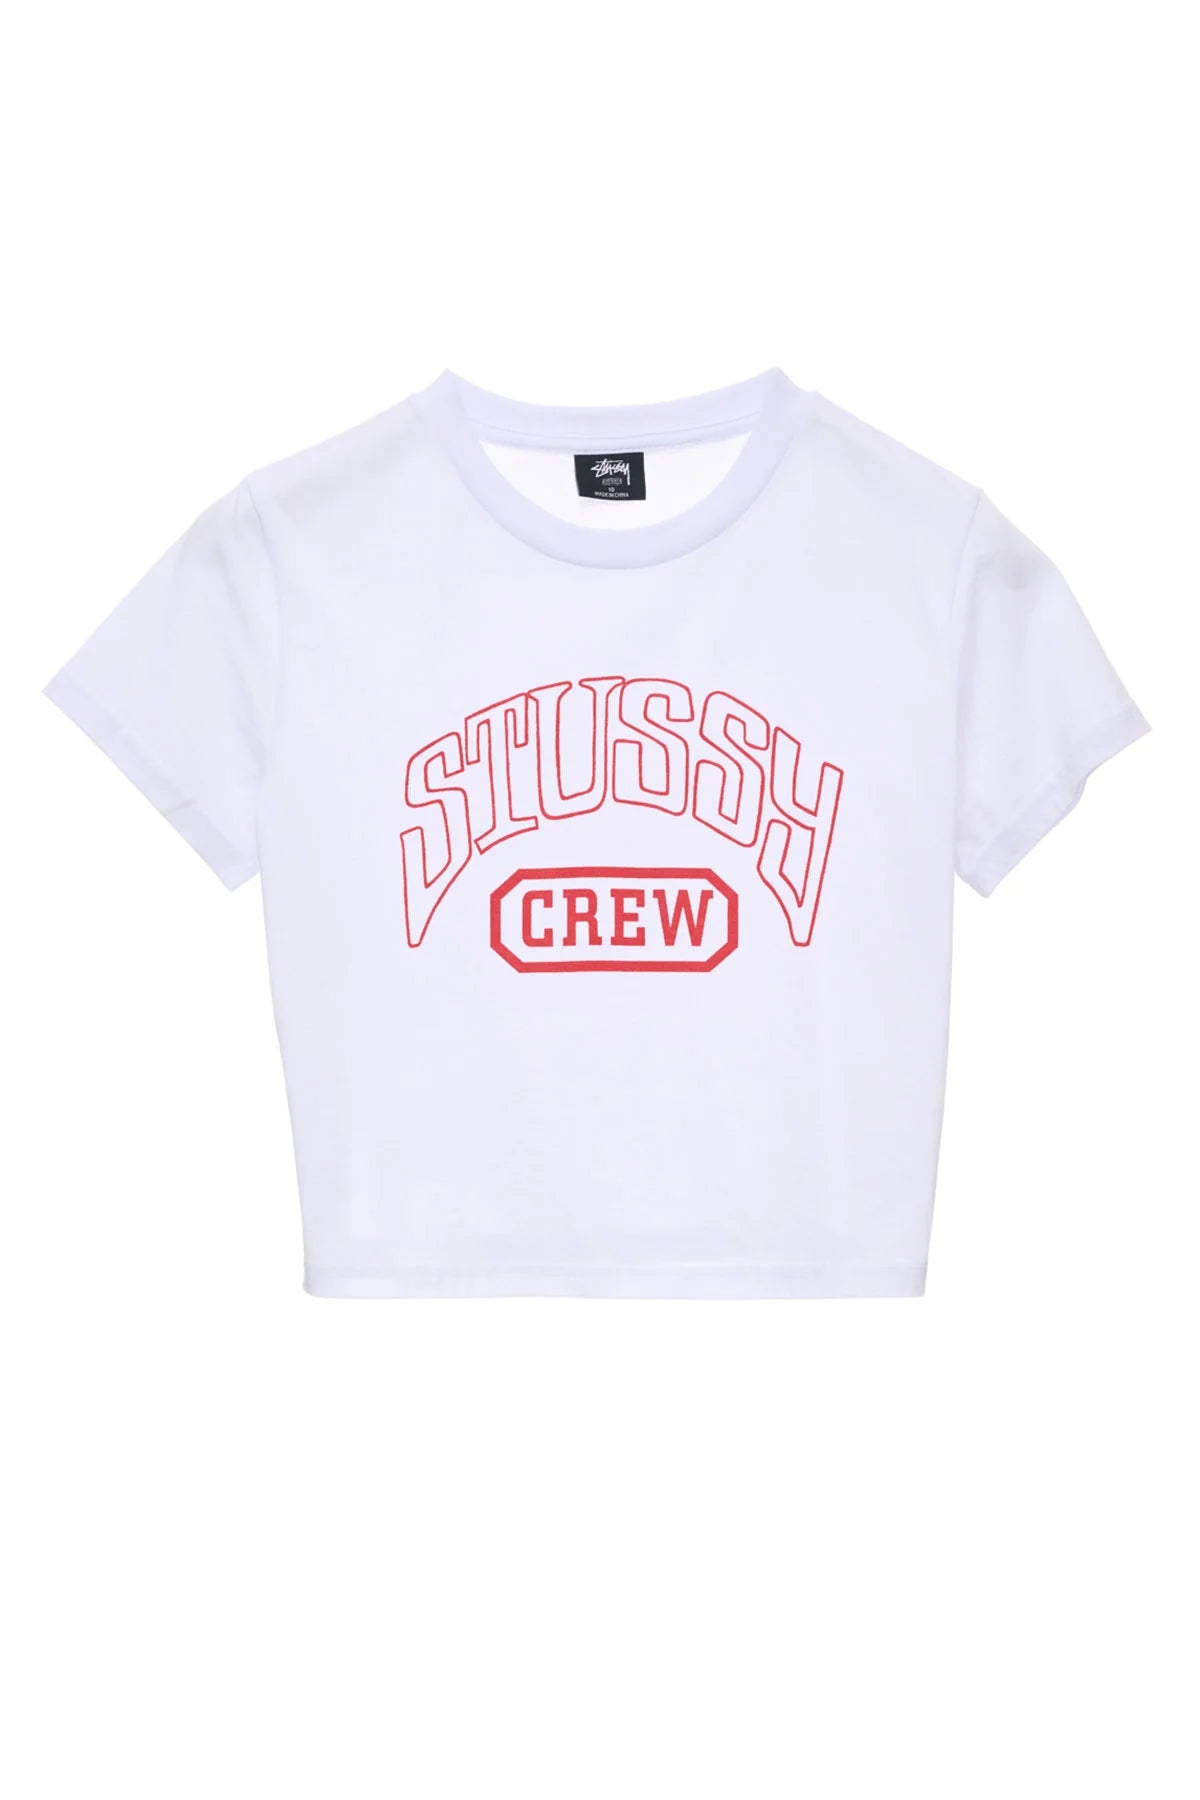 STUSSY Crew Slim Womens Tee - White